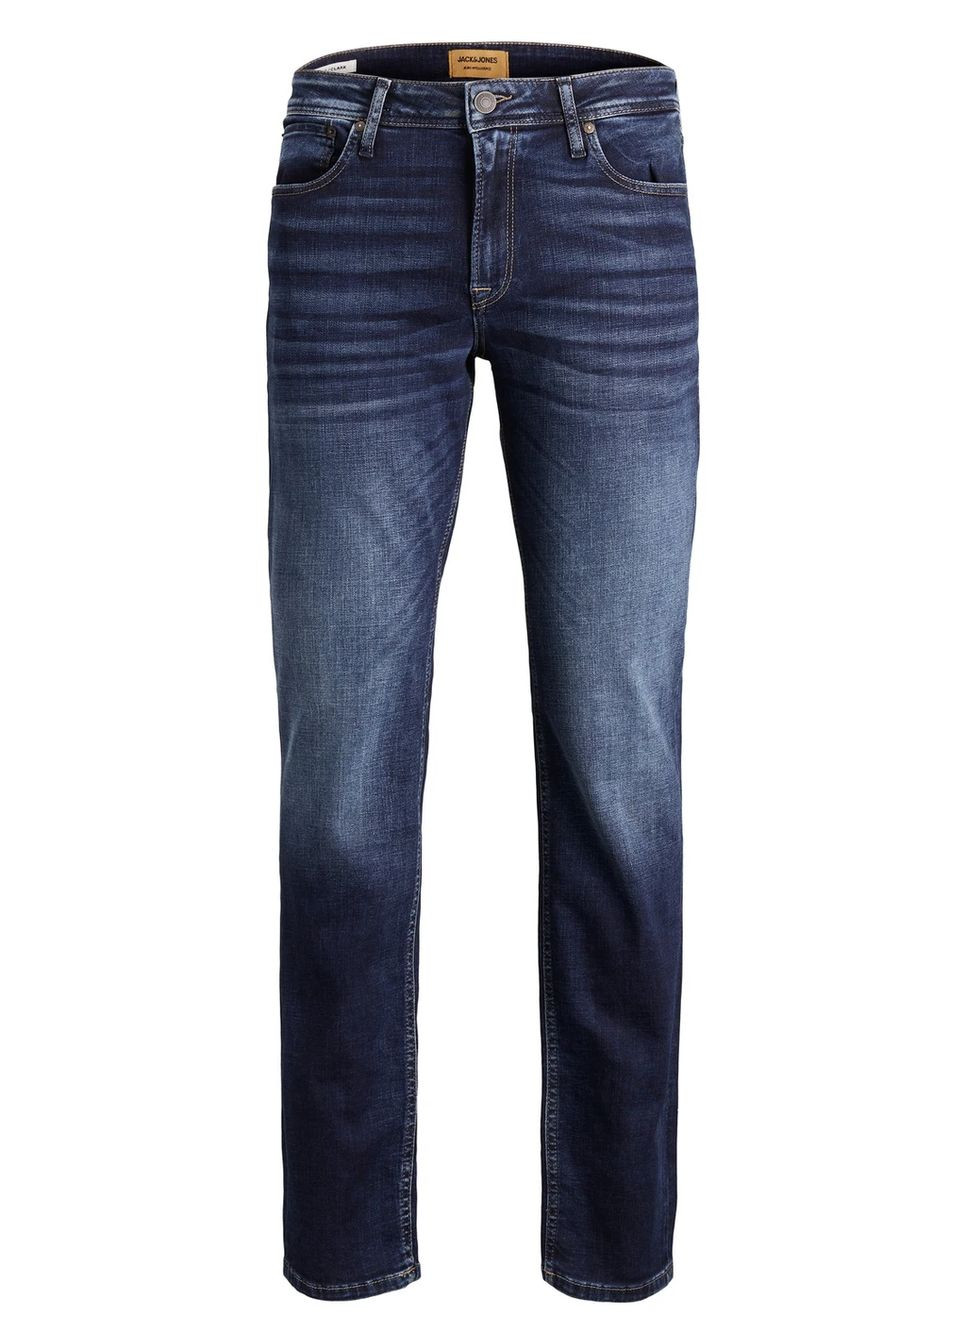 Темно-синие демисезонные джинсы Clark Original JOS 278 Regular fit 12177444 JACK&JONES